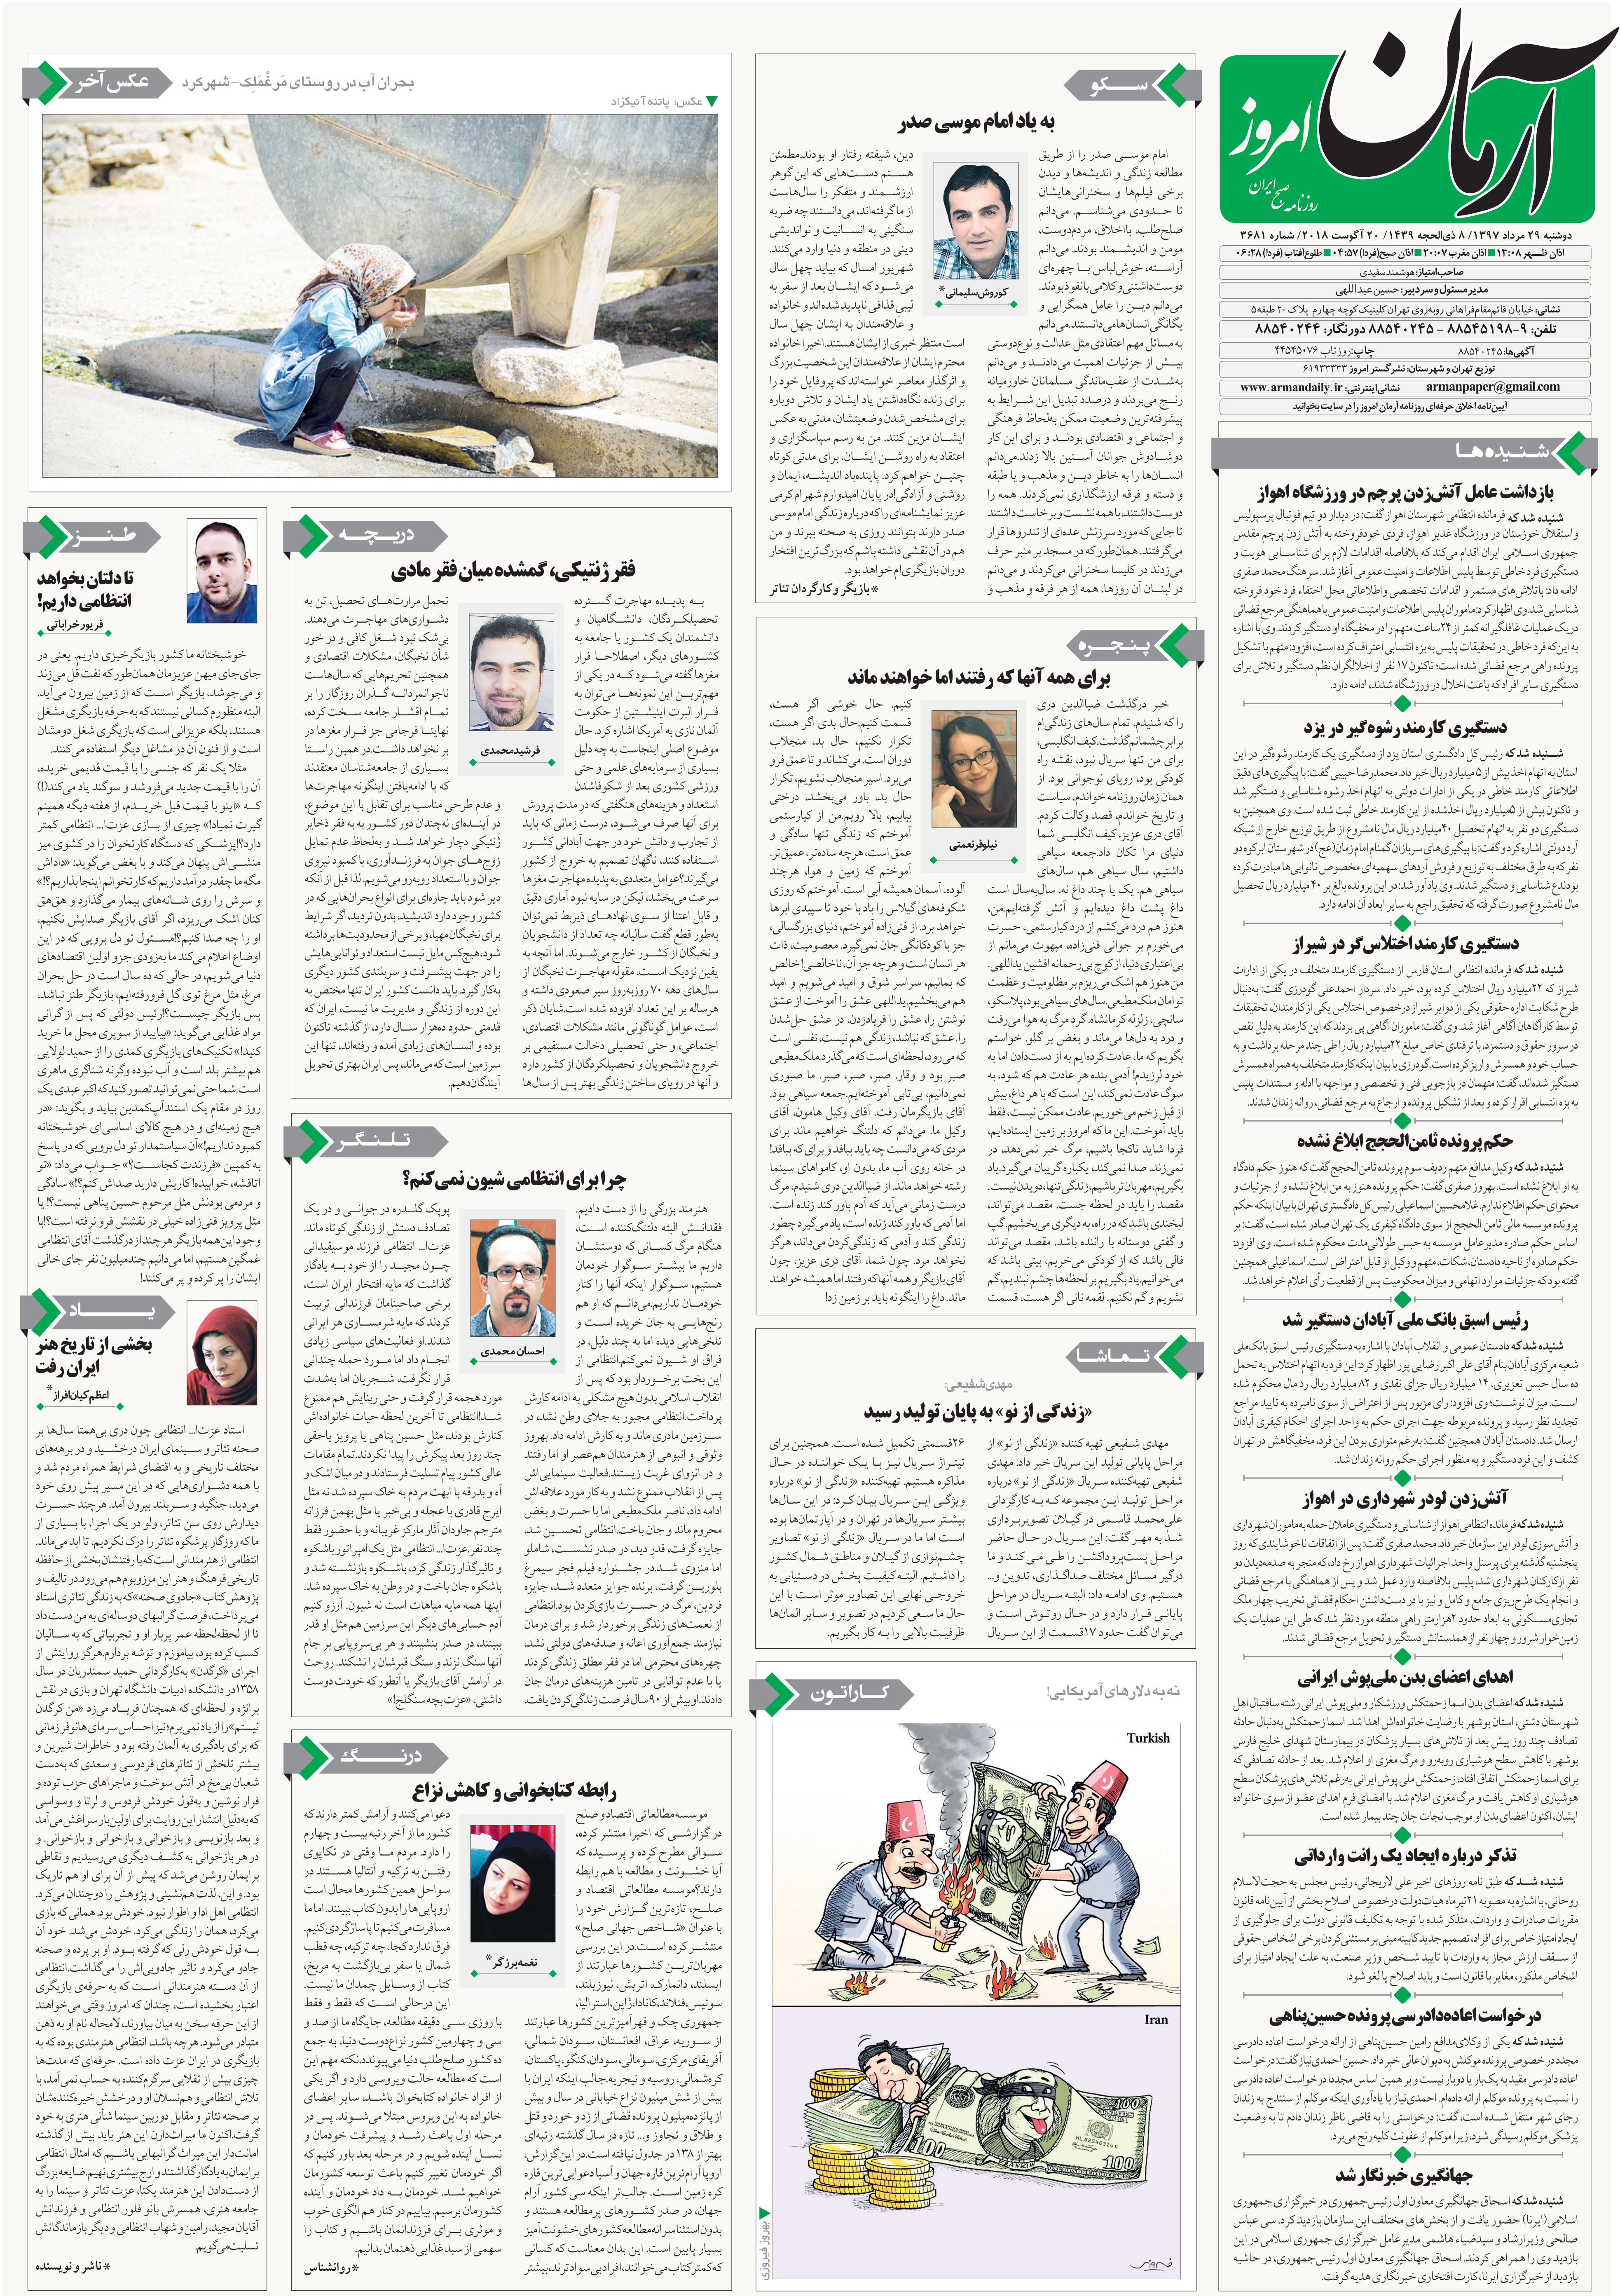 یادداشت اعظم کیان‌افراز  در پی درگذشت عزت‌الله انتظامی منتشر شده در روزنامه آرمان   